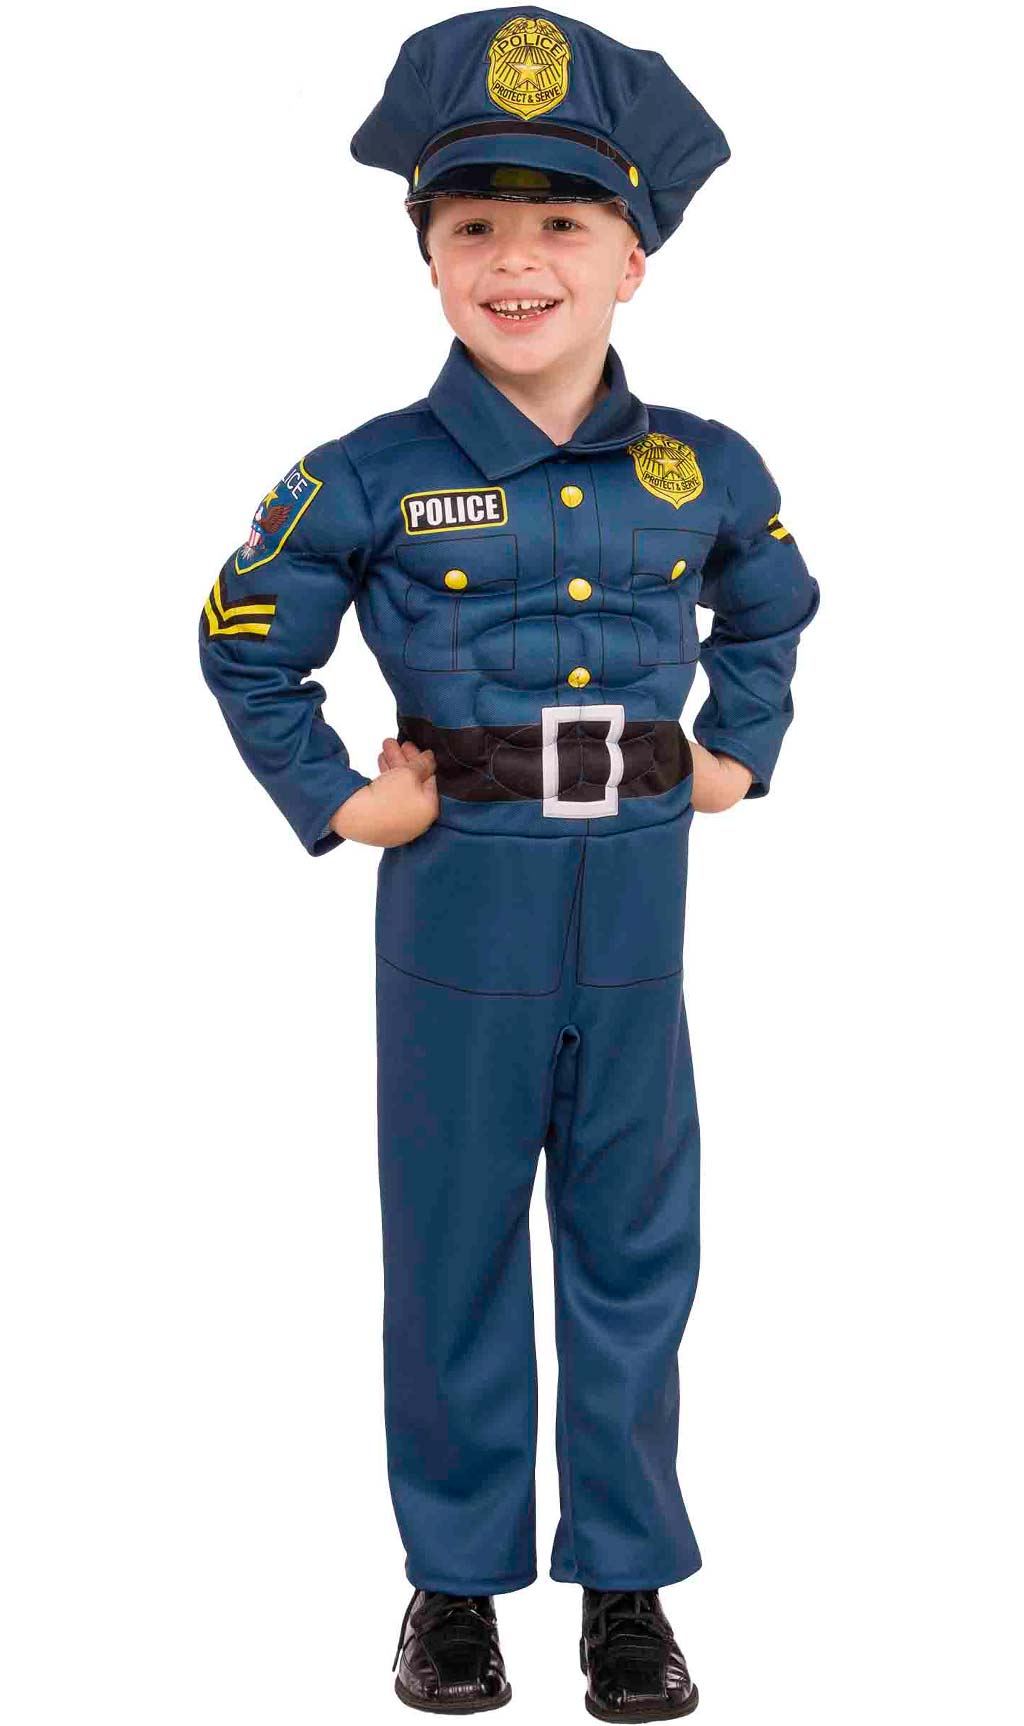 Disfraz de policía para niños. Entrega 24h